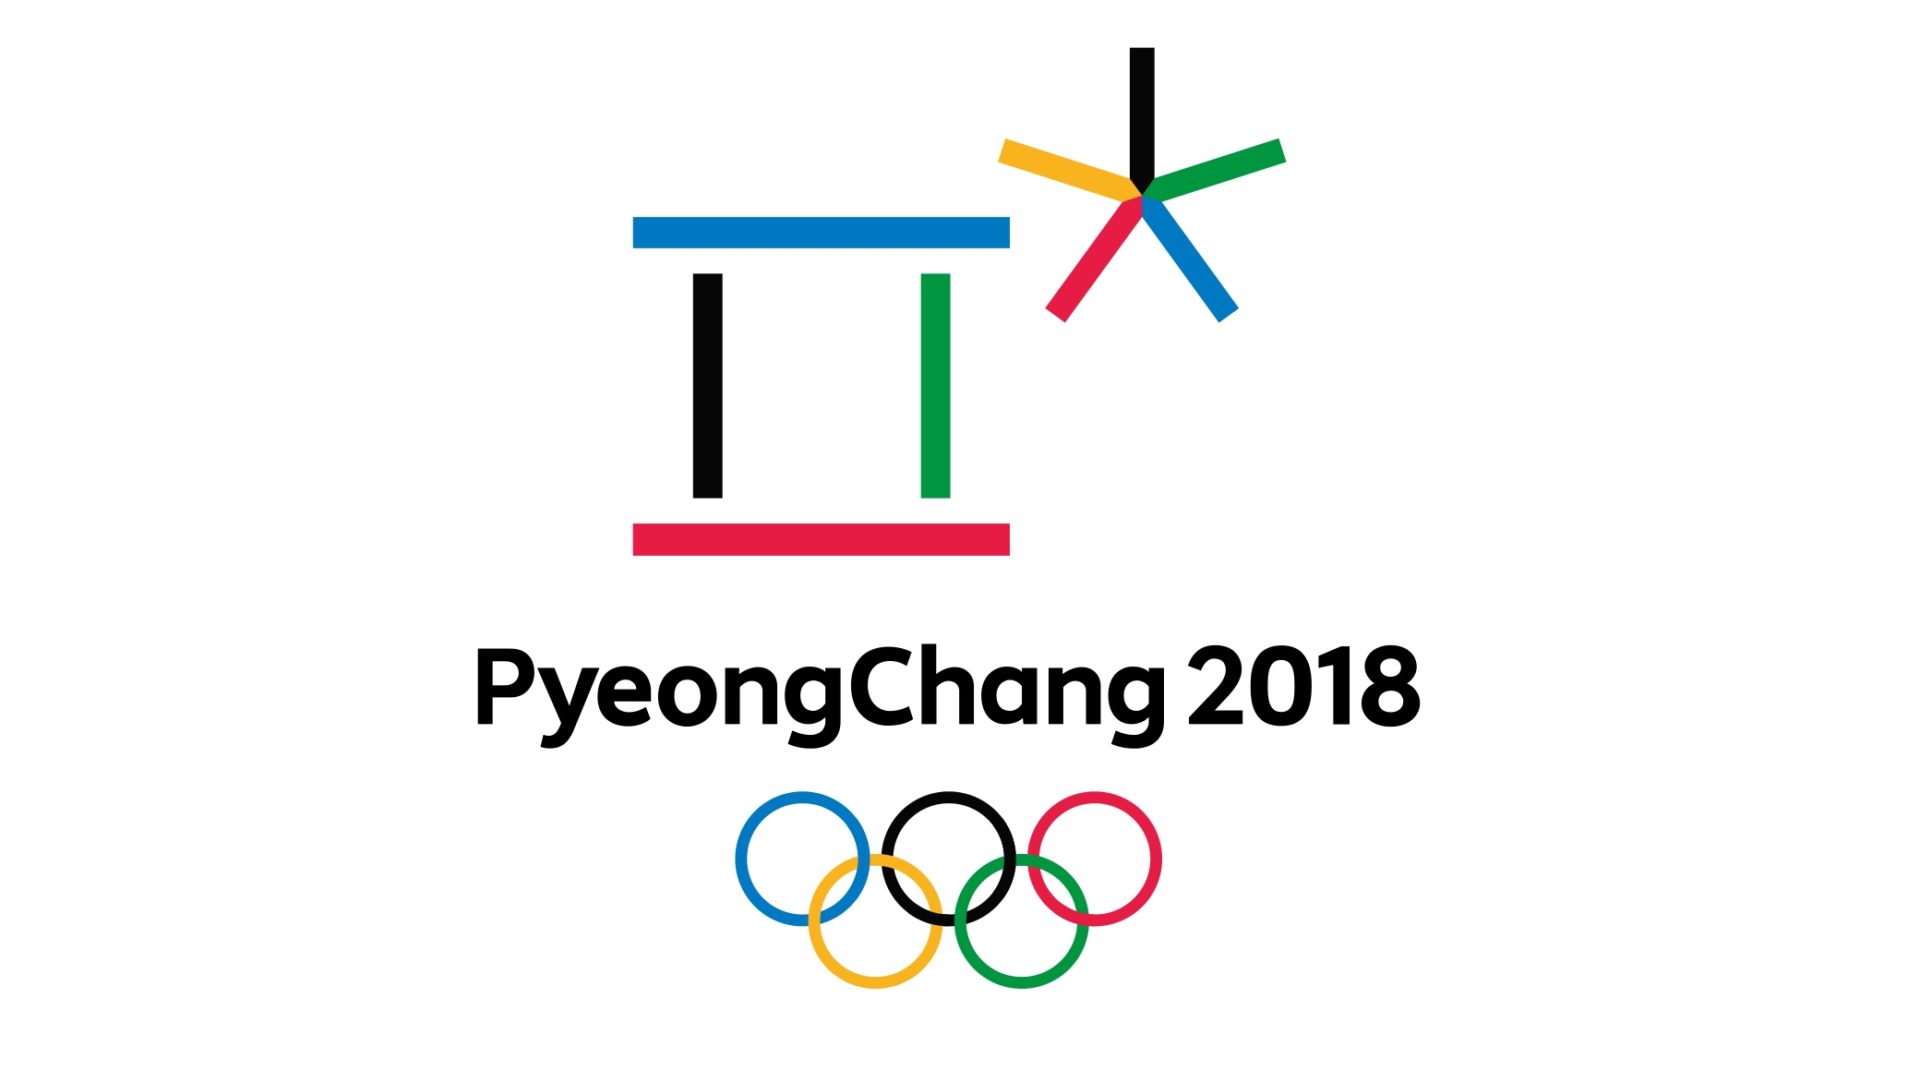 Les Jeux Olympiques d'hiver 2018 se déroulent en Corée du Sud 